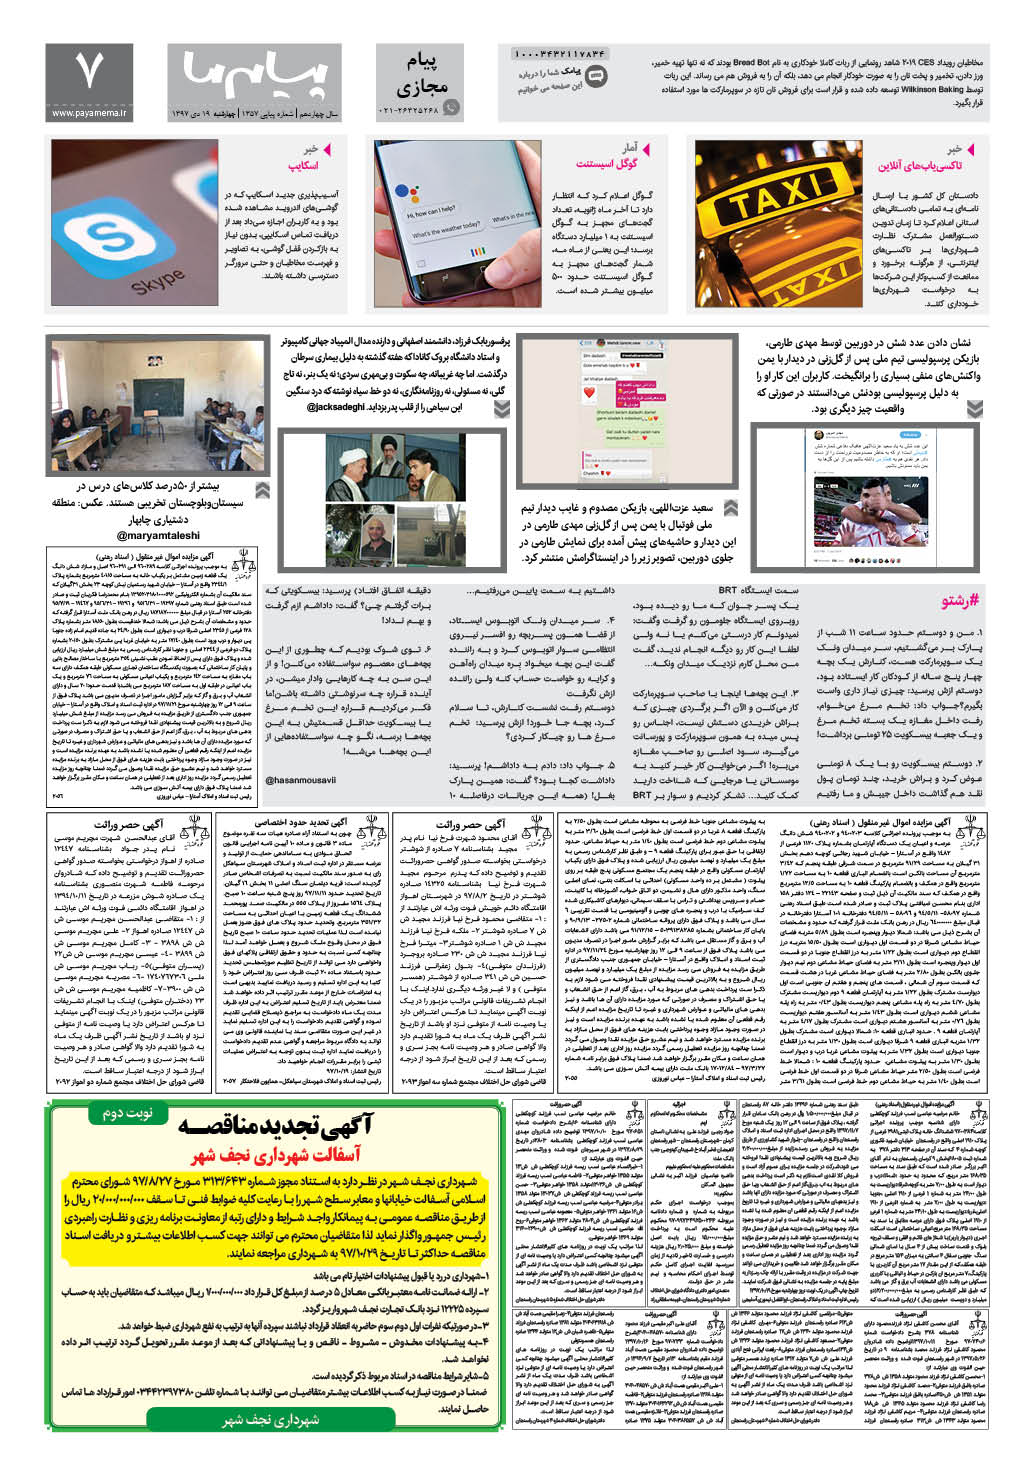 صفحه پیام مجازی شماره 1357 روزنامه پیام ما